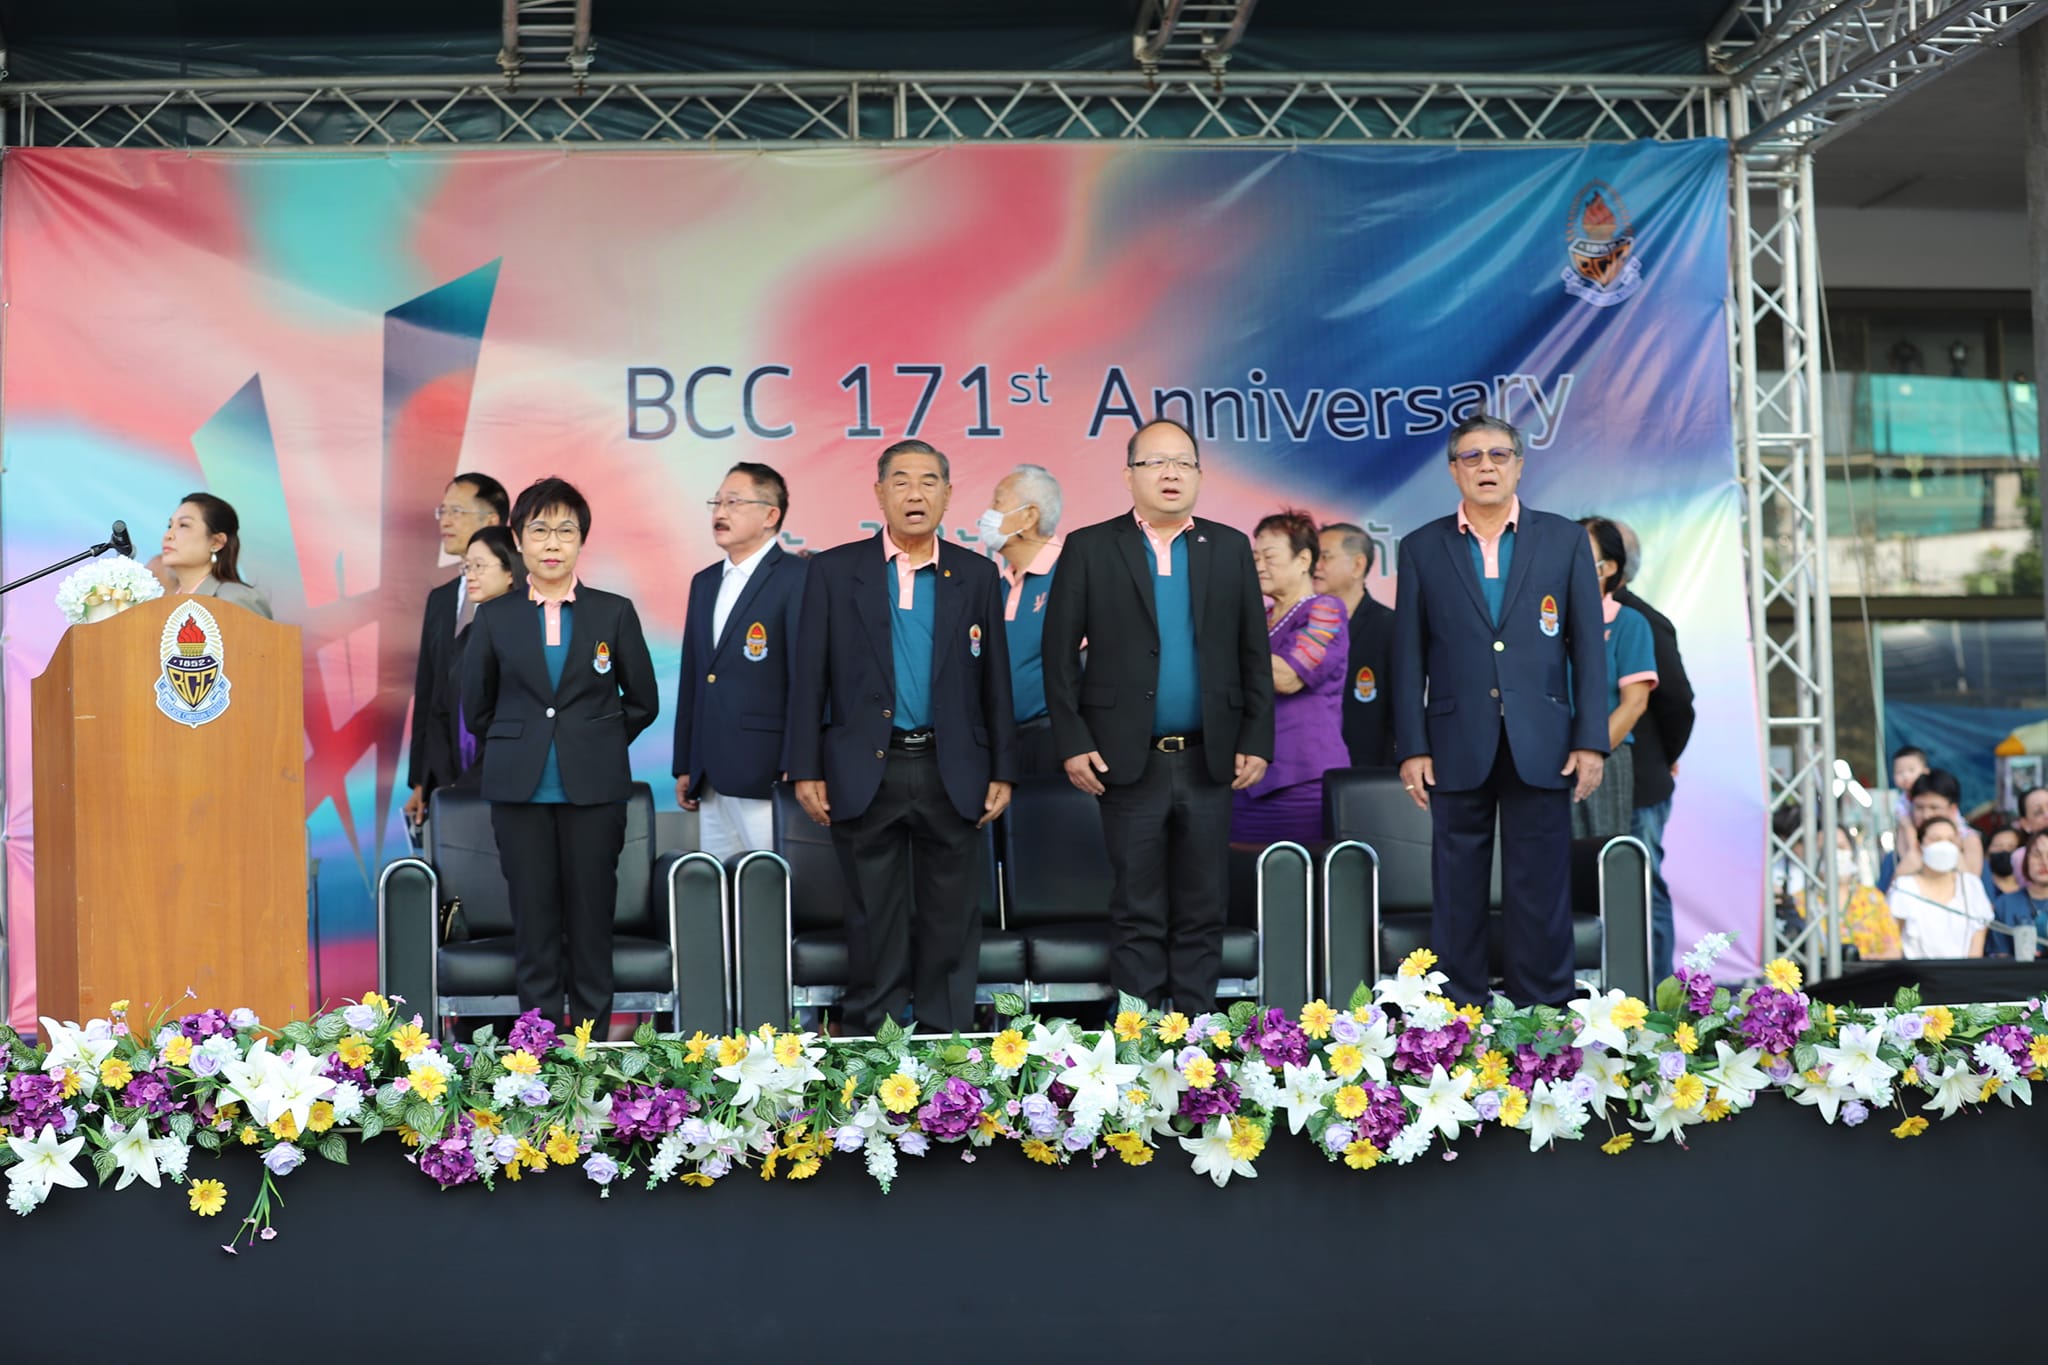 BCCAA งานครบรอบก่อตั้งโรงเรียน 171 ปี ในชื่องาน BCC 171 ปี ก้าวไปให้ไกล ก้าวไปด้วยกัน _10